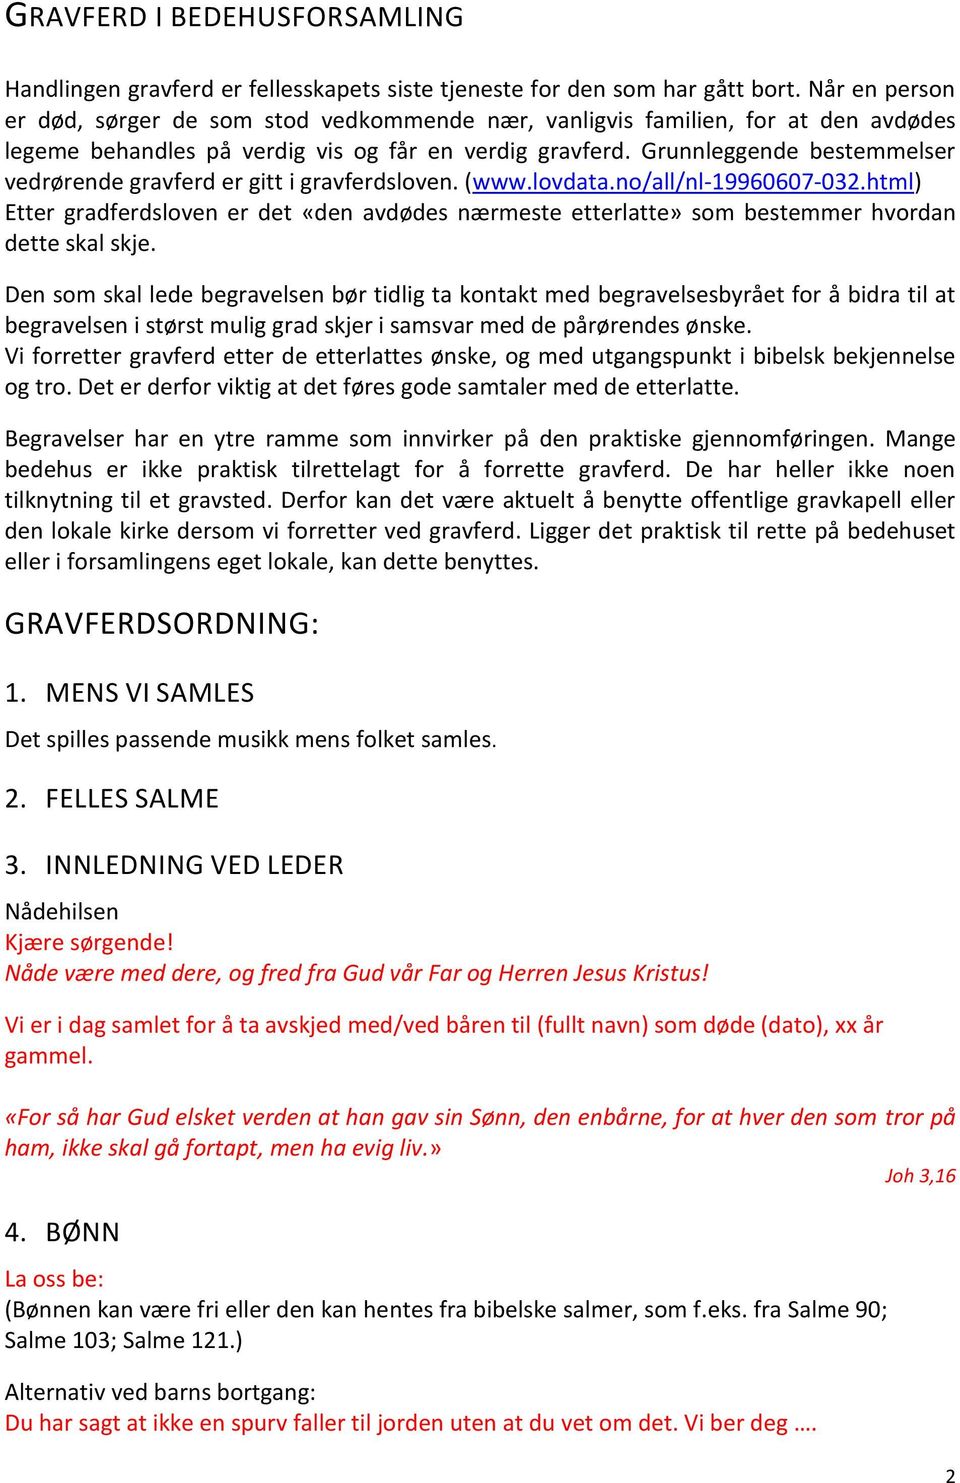 Grunnleggende bestemmelser vedrørende gravferd er gitt i gravferdsloven. (www.lovdata.no/all/nl-19960607-032.